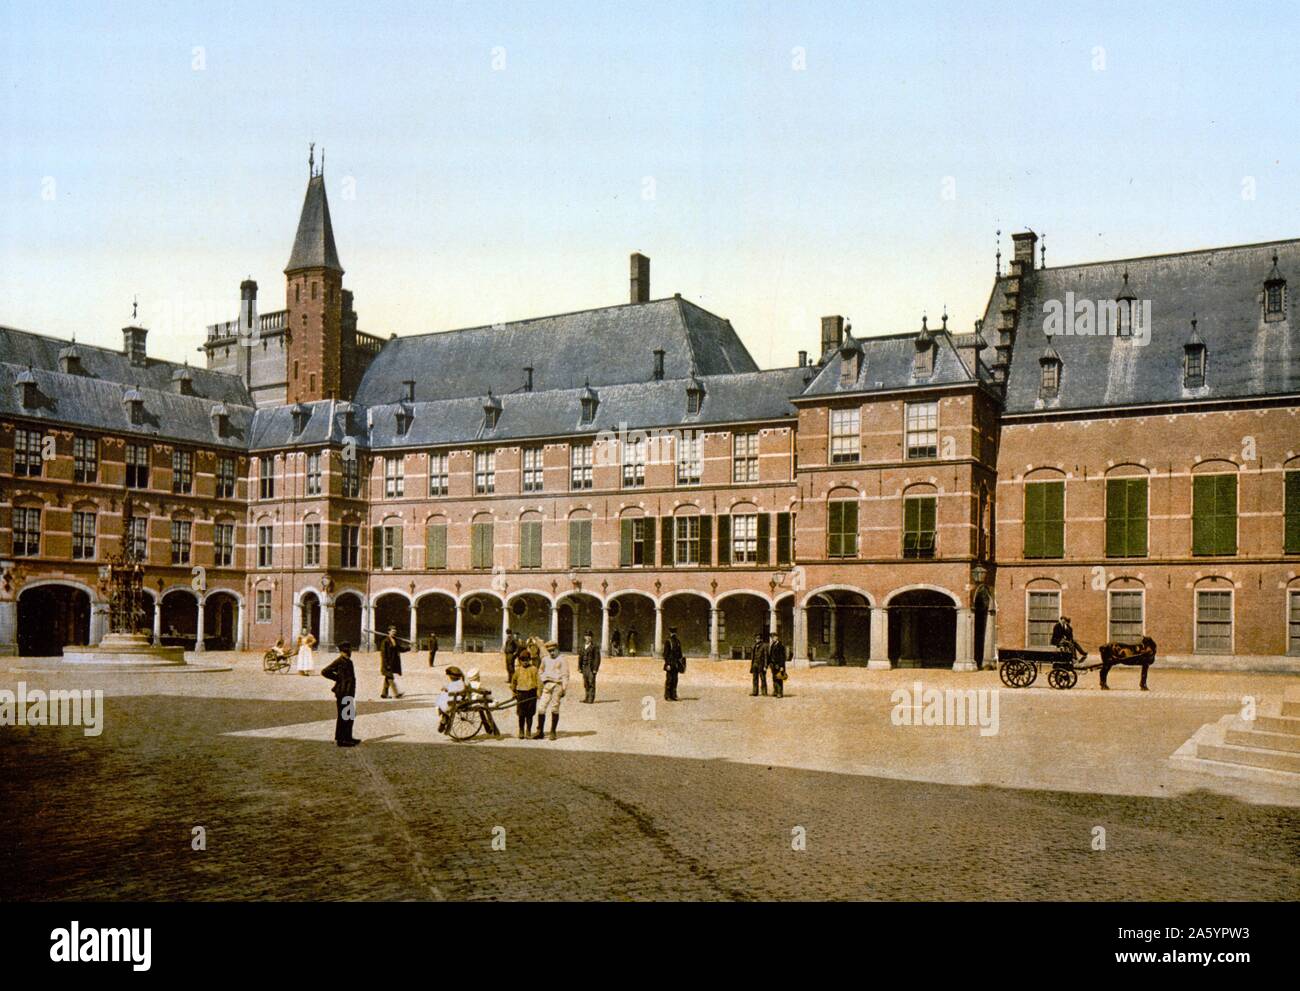 La Spui (canale), Aia, Olanda. Binnenhof (corte interna) è una piazza nel centro di Amsterdam, la capitale dei Paesi Bassi. La Spui era originariamente un corpo di acqua che ha formato il limite meridionale della città fino al 1420 's quando il canale Singel è stato scavato come un fossato esterno intorno alla città. Nel 1882 la Spui è stata riempita e divenne la piazza che conosciamo oggi. Foto Stock